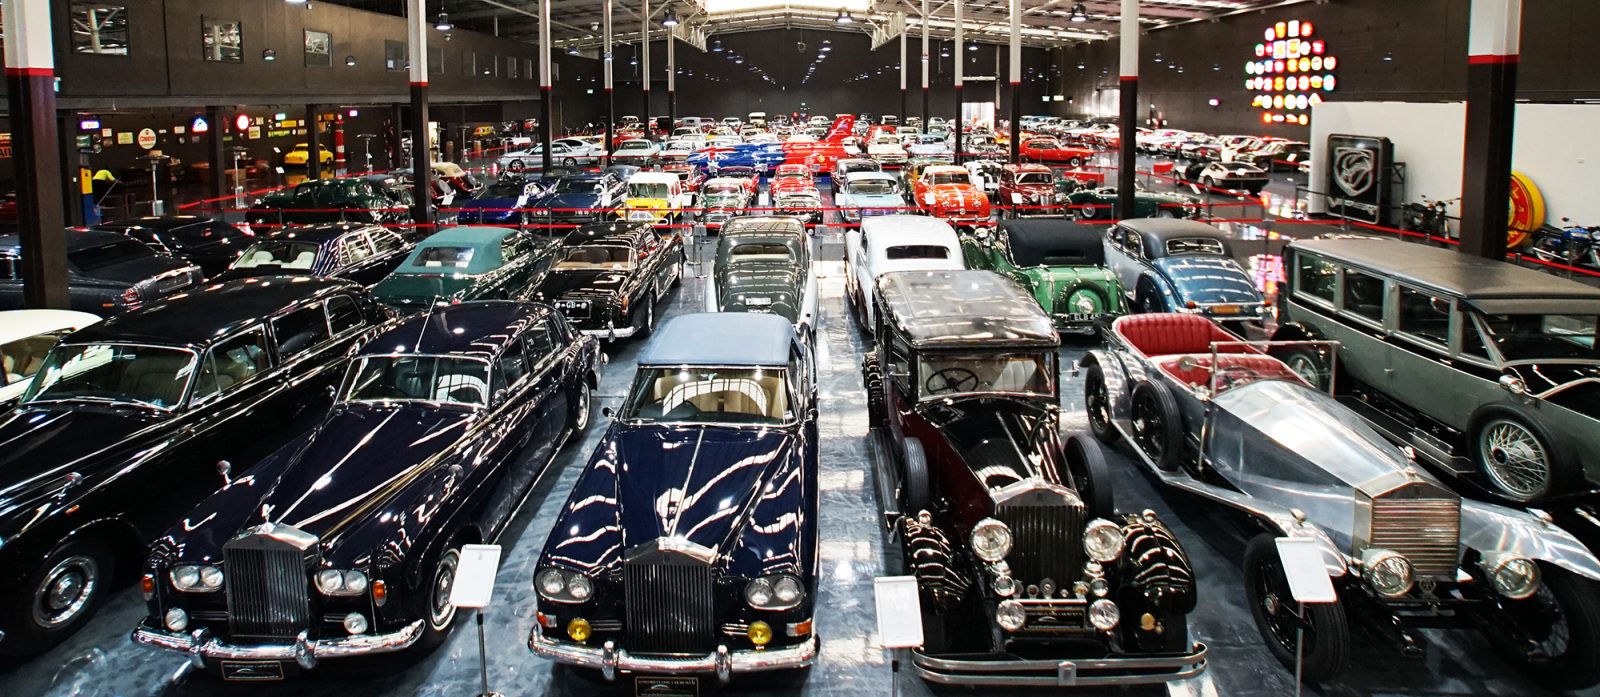 Gosford Car Museum